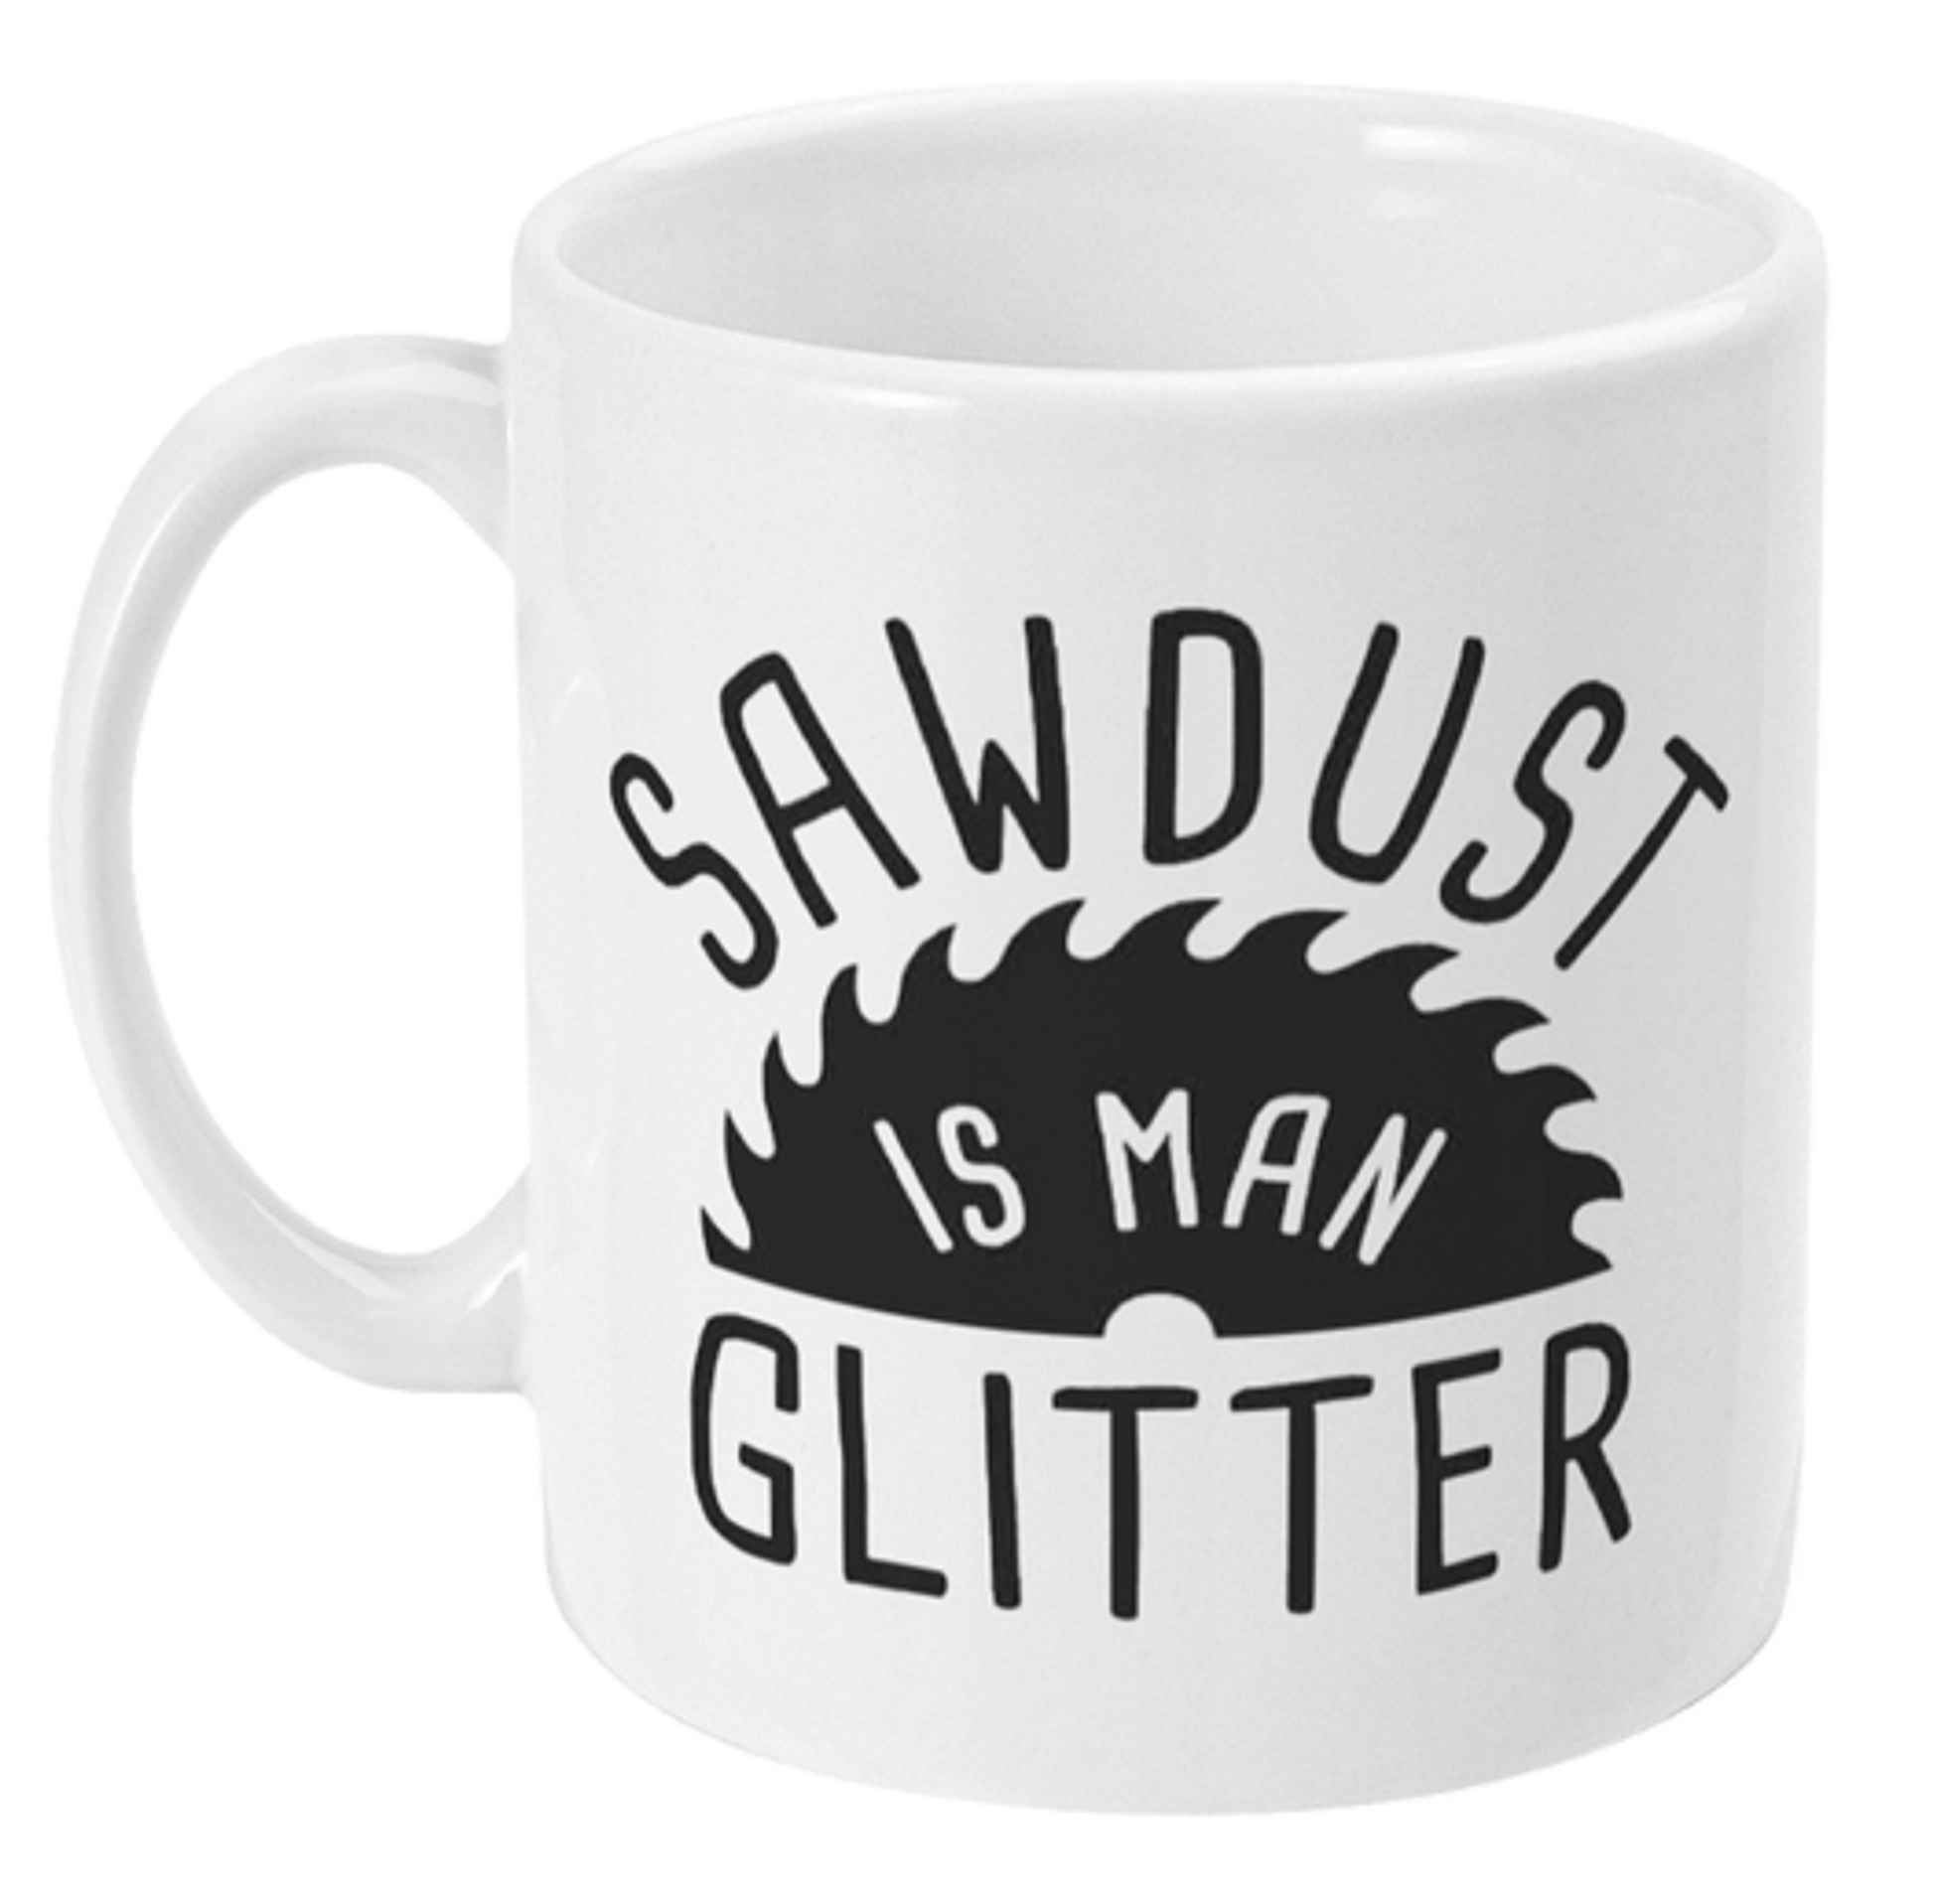  Funny Sawdust Is A Mans Glitter Mug by Free Spirit Accessories sold by Free Spirit Accessories